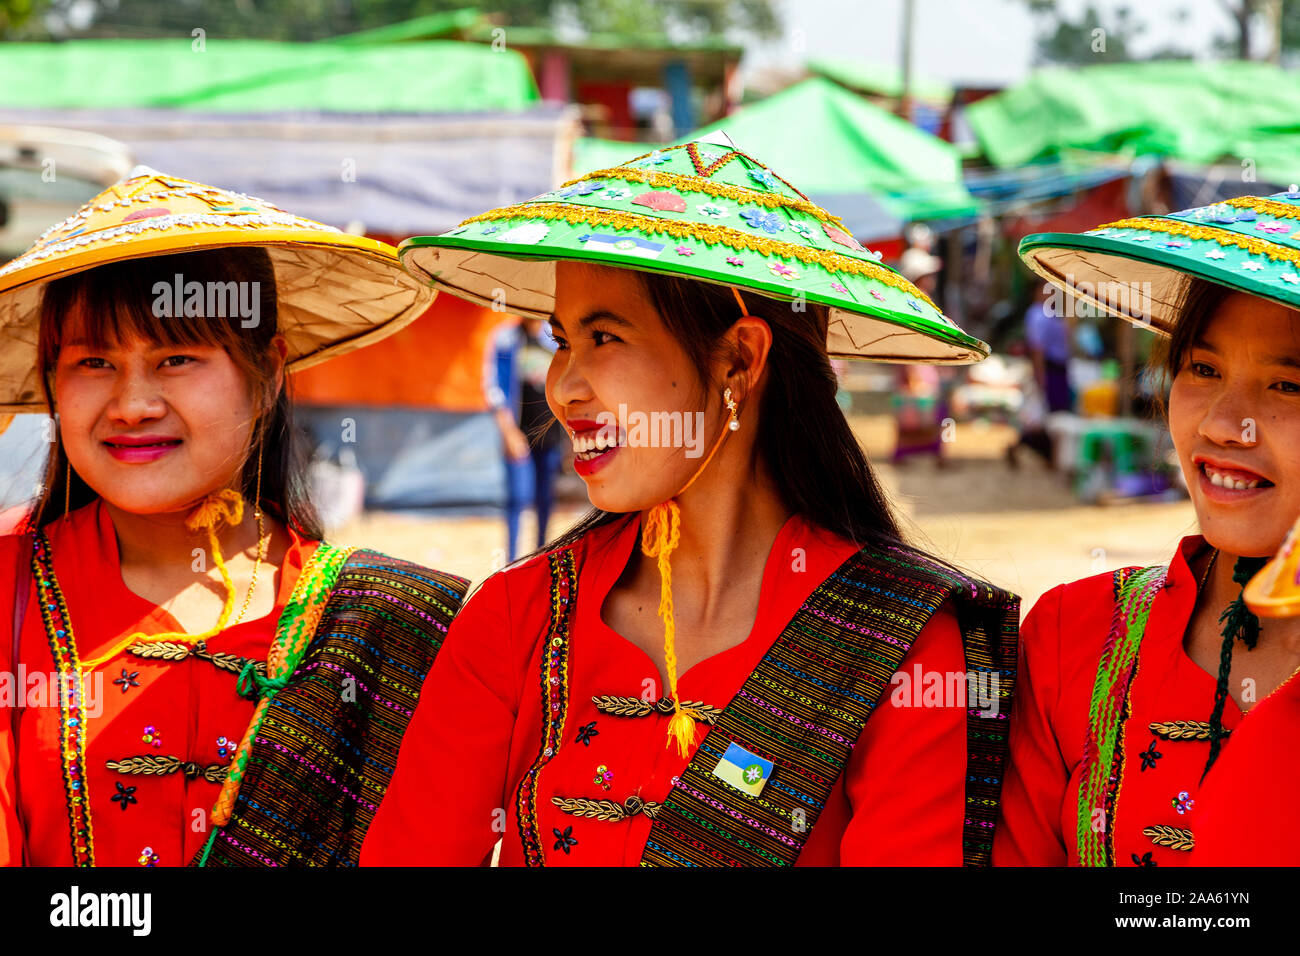 Junge Frauen, die ethnischen Minderheiten angehören, Warten, Almosen zu geben, Mönche, die Teil in einer Prozession, die Pindaya Cave Festival, Pindaya, Shan Staat, Myanmar Stockfoto